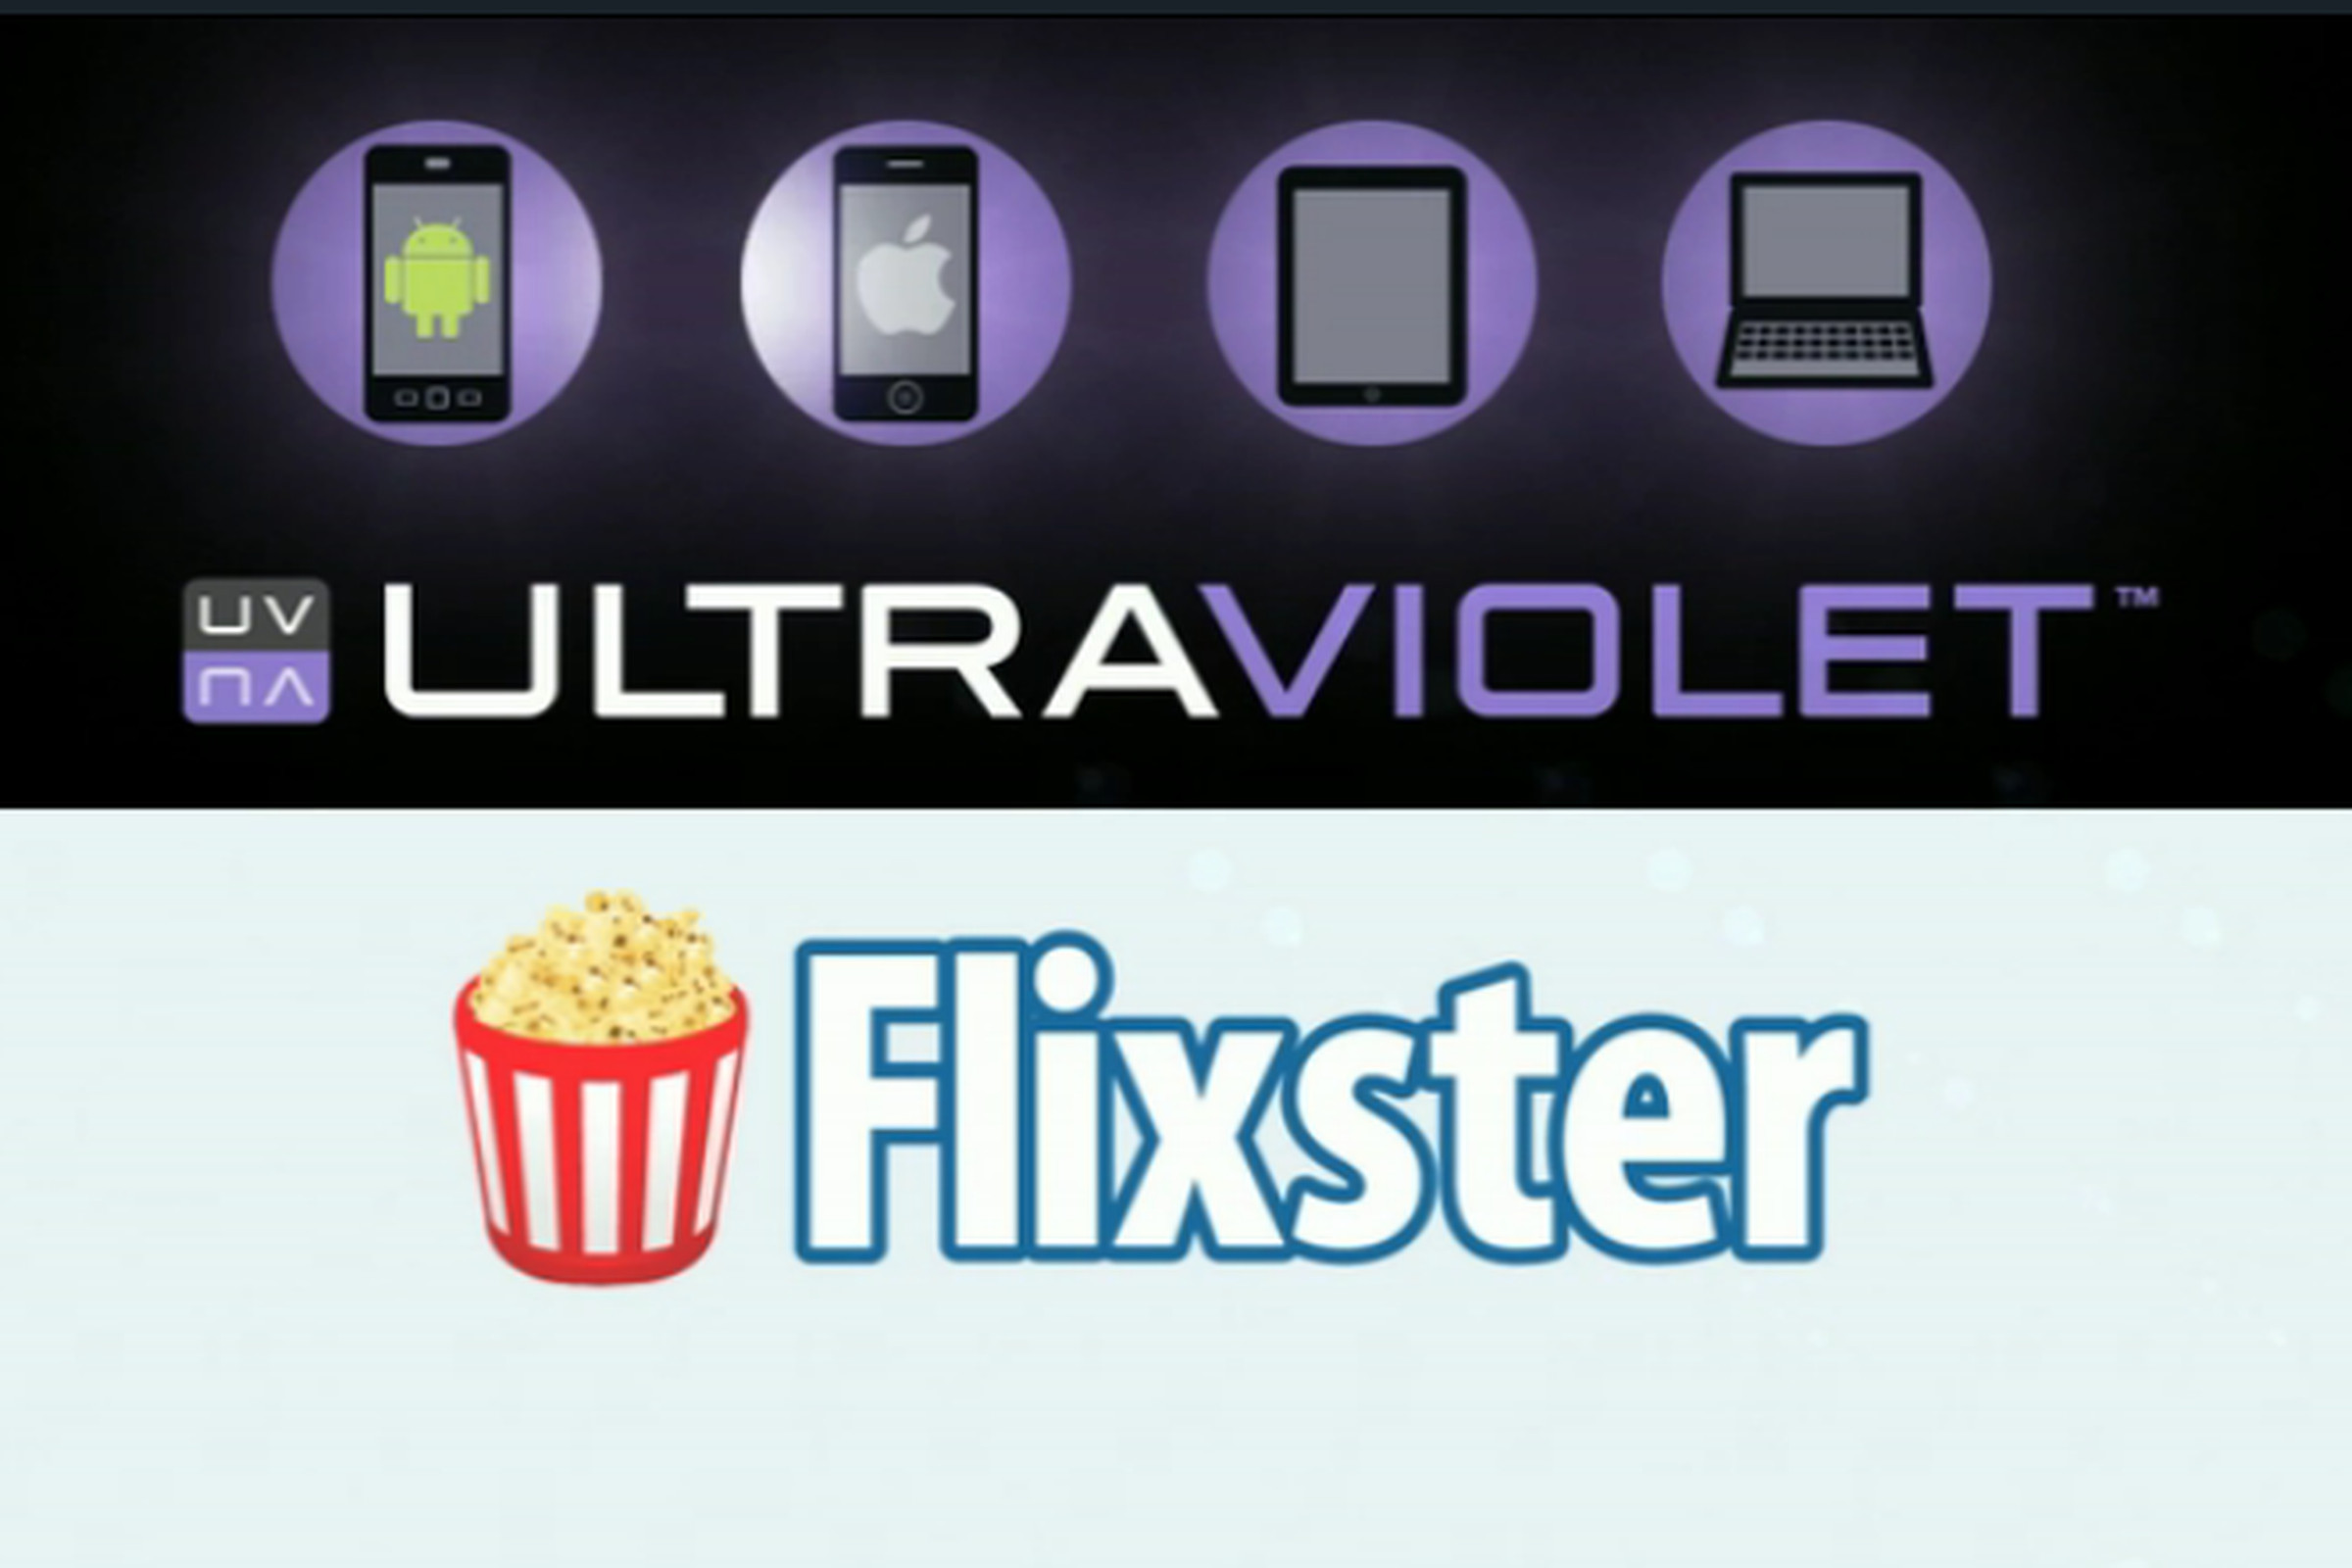 UltraViolet Flixster